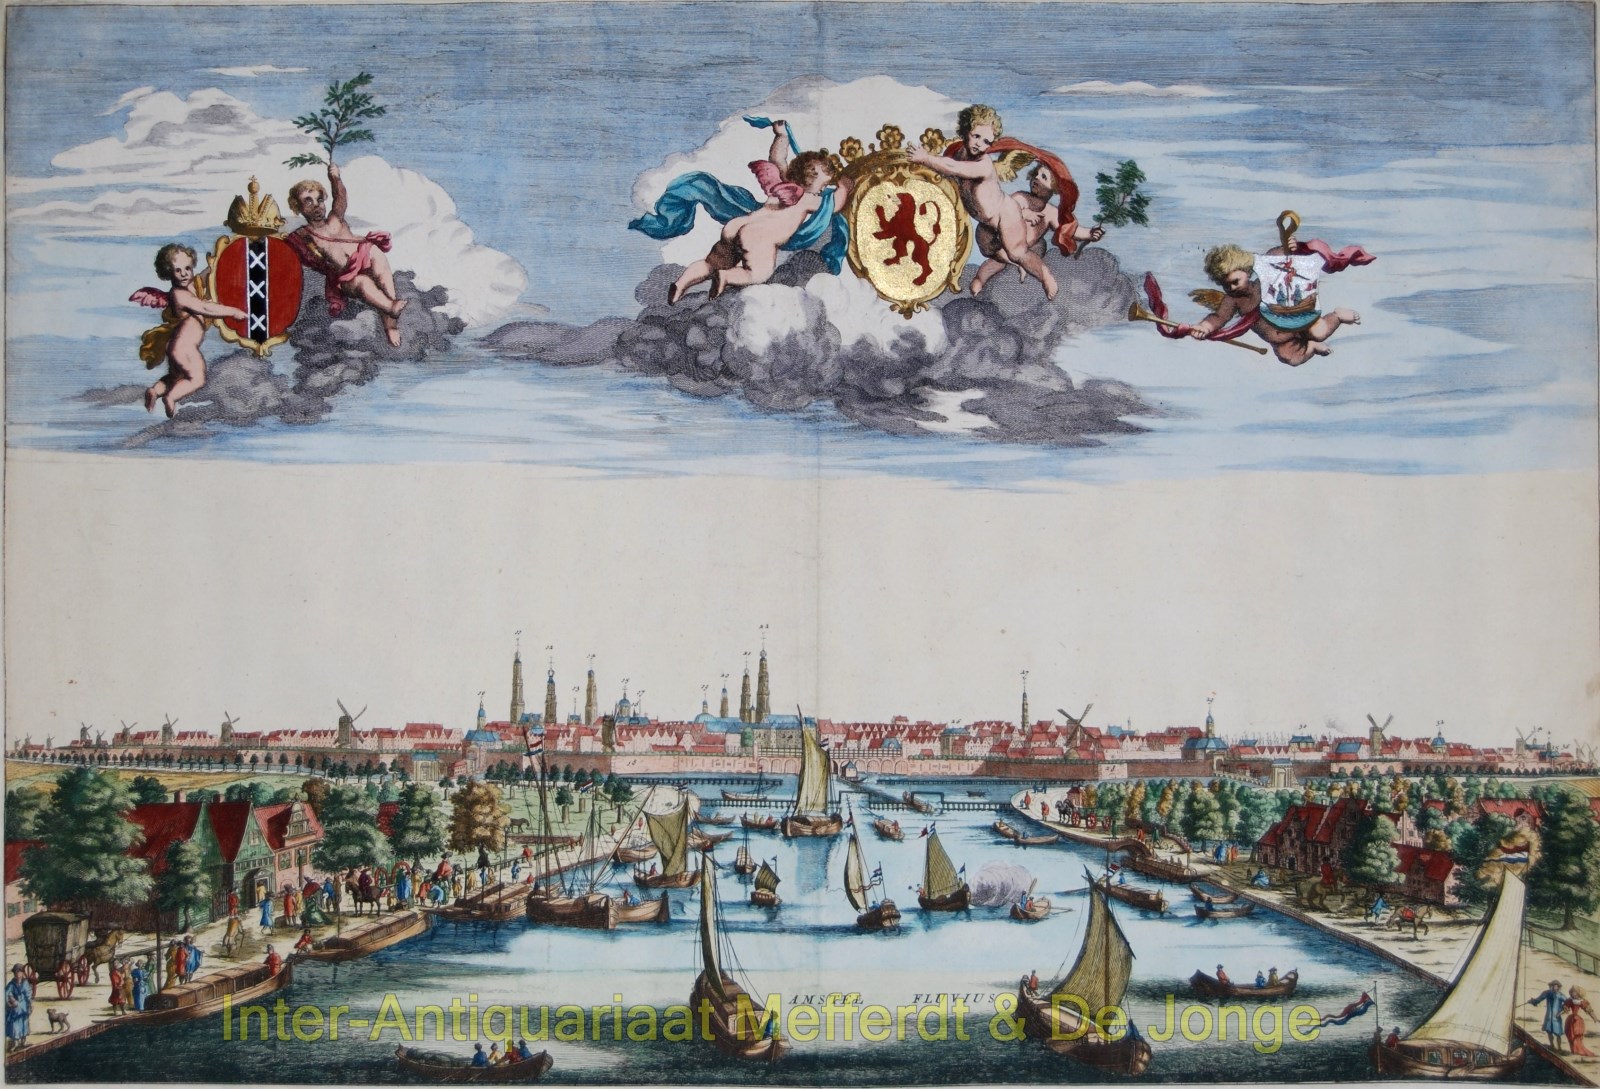 Scheevenhuysen-- A. - Amsterdam seen from the Amstel river - Ambrosius Scheevenhuysen, c. 1700